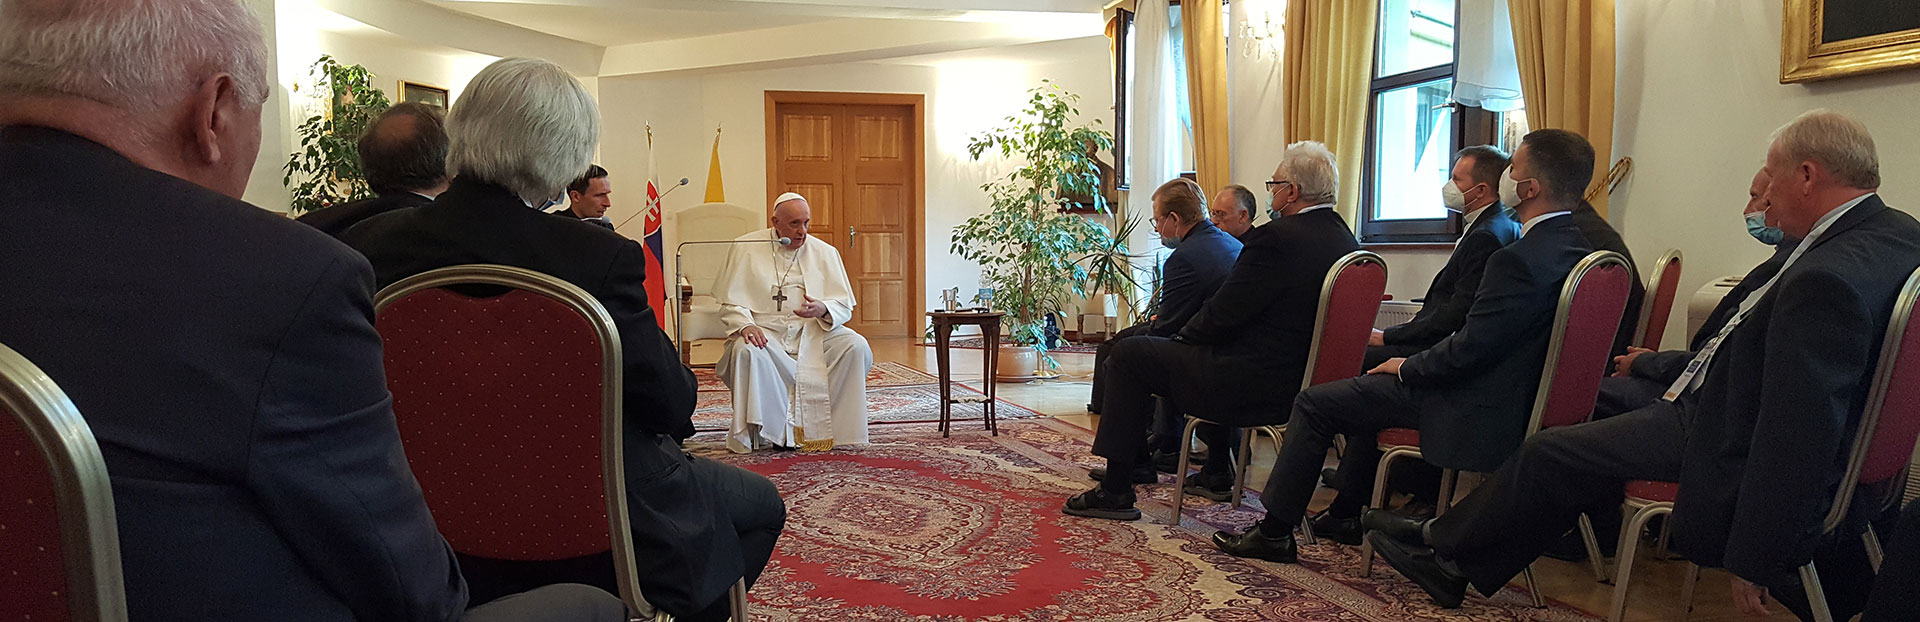 El Papa Francisco en Eslovaquia: Un gesto muy cariñoso con los jesuitas